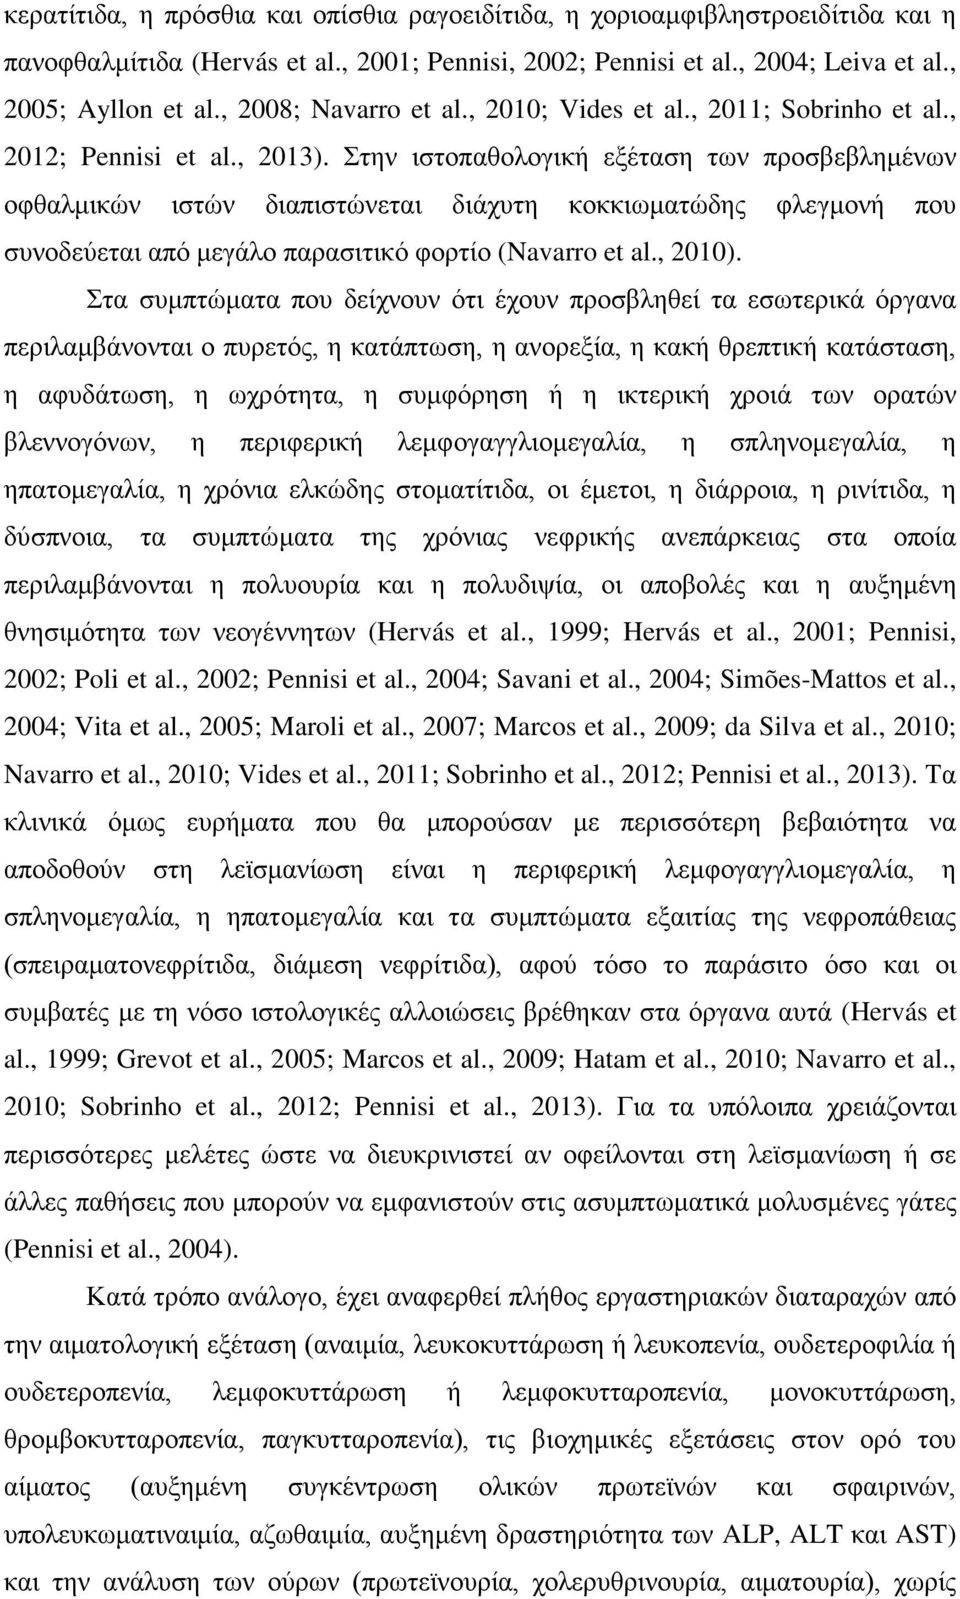 Στην ιστοπαθολογική εξέταση των προσβεβλημένων οφθαλμικών ιστών διαπιστώνεται διάχυτη κοκκιωματώδης φλεγμονή που συνοδεύεται από μεγάλο παρασιτικό φορτίο (Navarro et al., 2010).